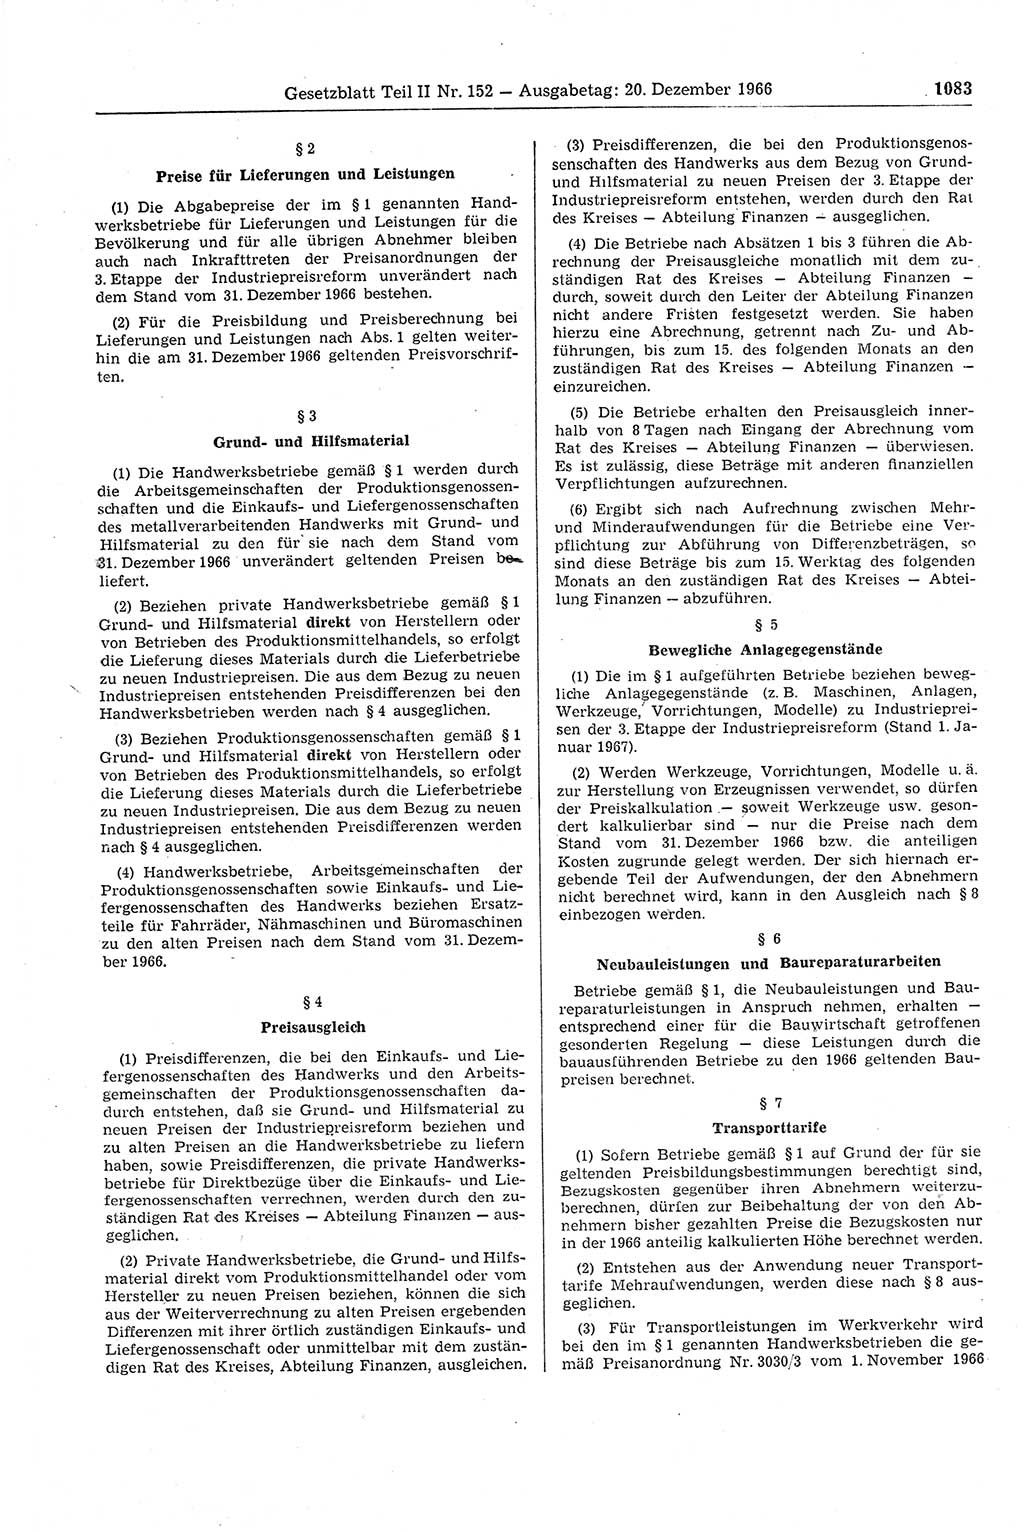 Gesetzblatt (GBl.) der Deutschen Demokratischen Republik (DDR) Teil ⅠⅠ 1966, Seite 1083 (GBl. DDR ⅠⅠ 1966, S. 1083)